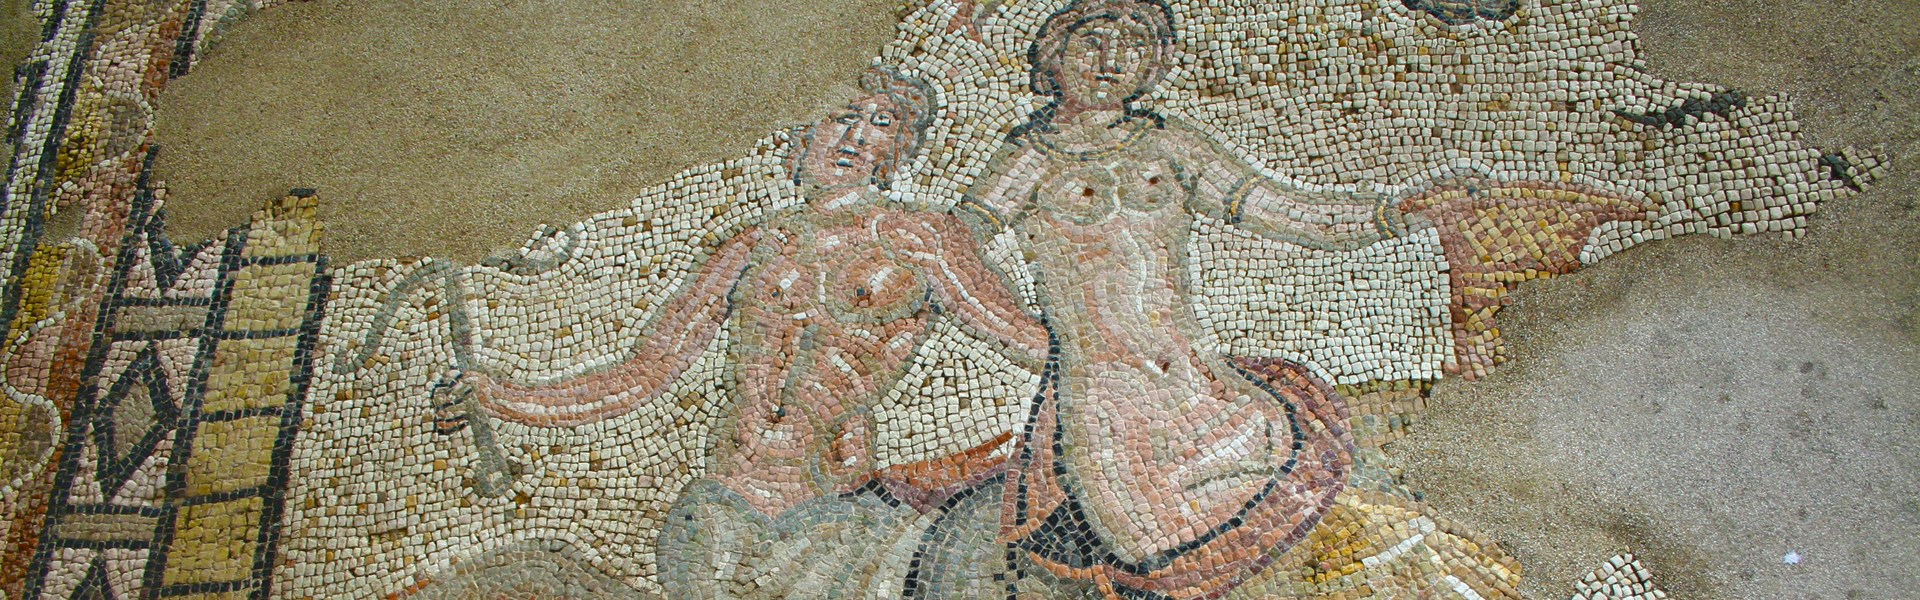 Castellone di Suasa - Domus dei Coiedii - particolare dei mosaici pavimentali